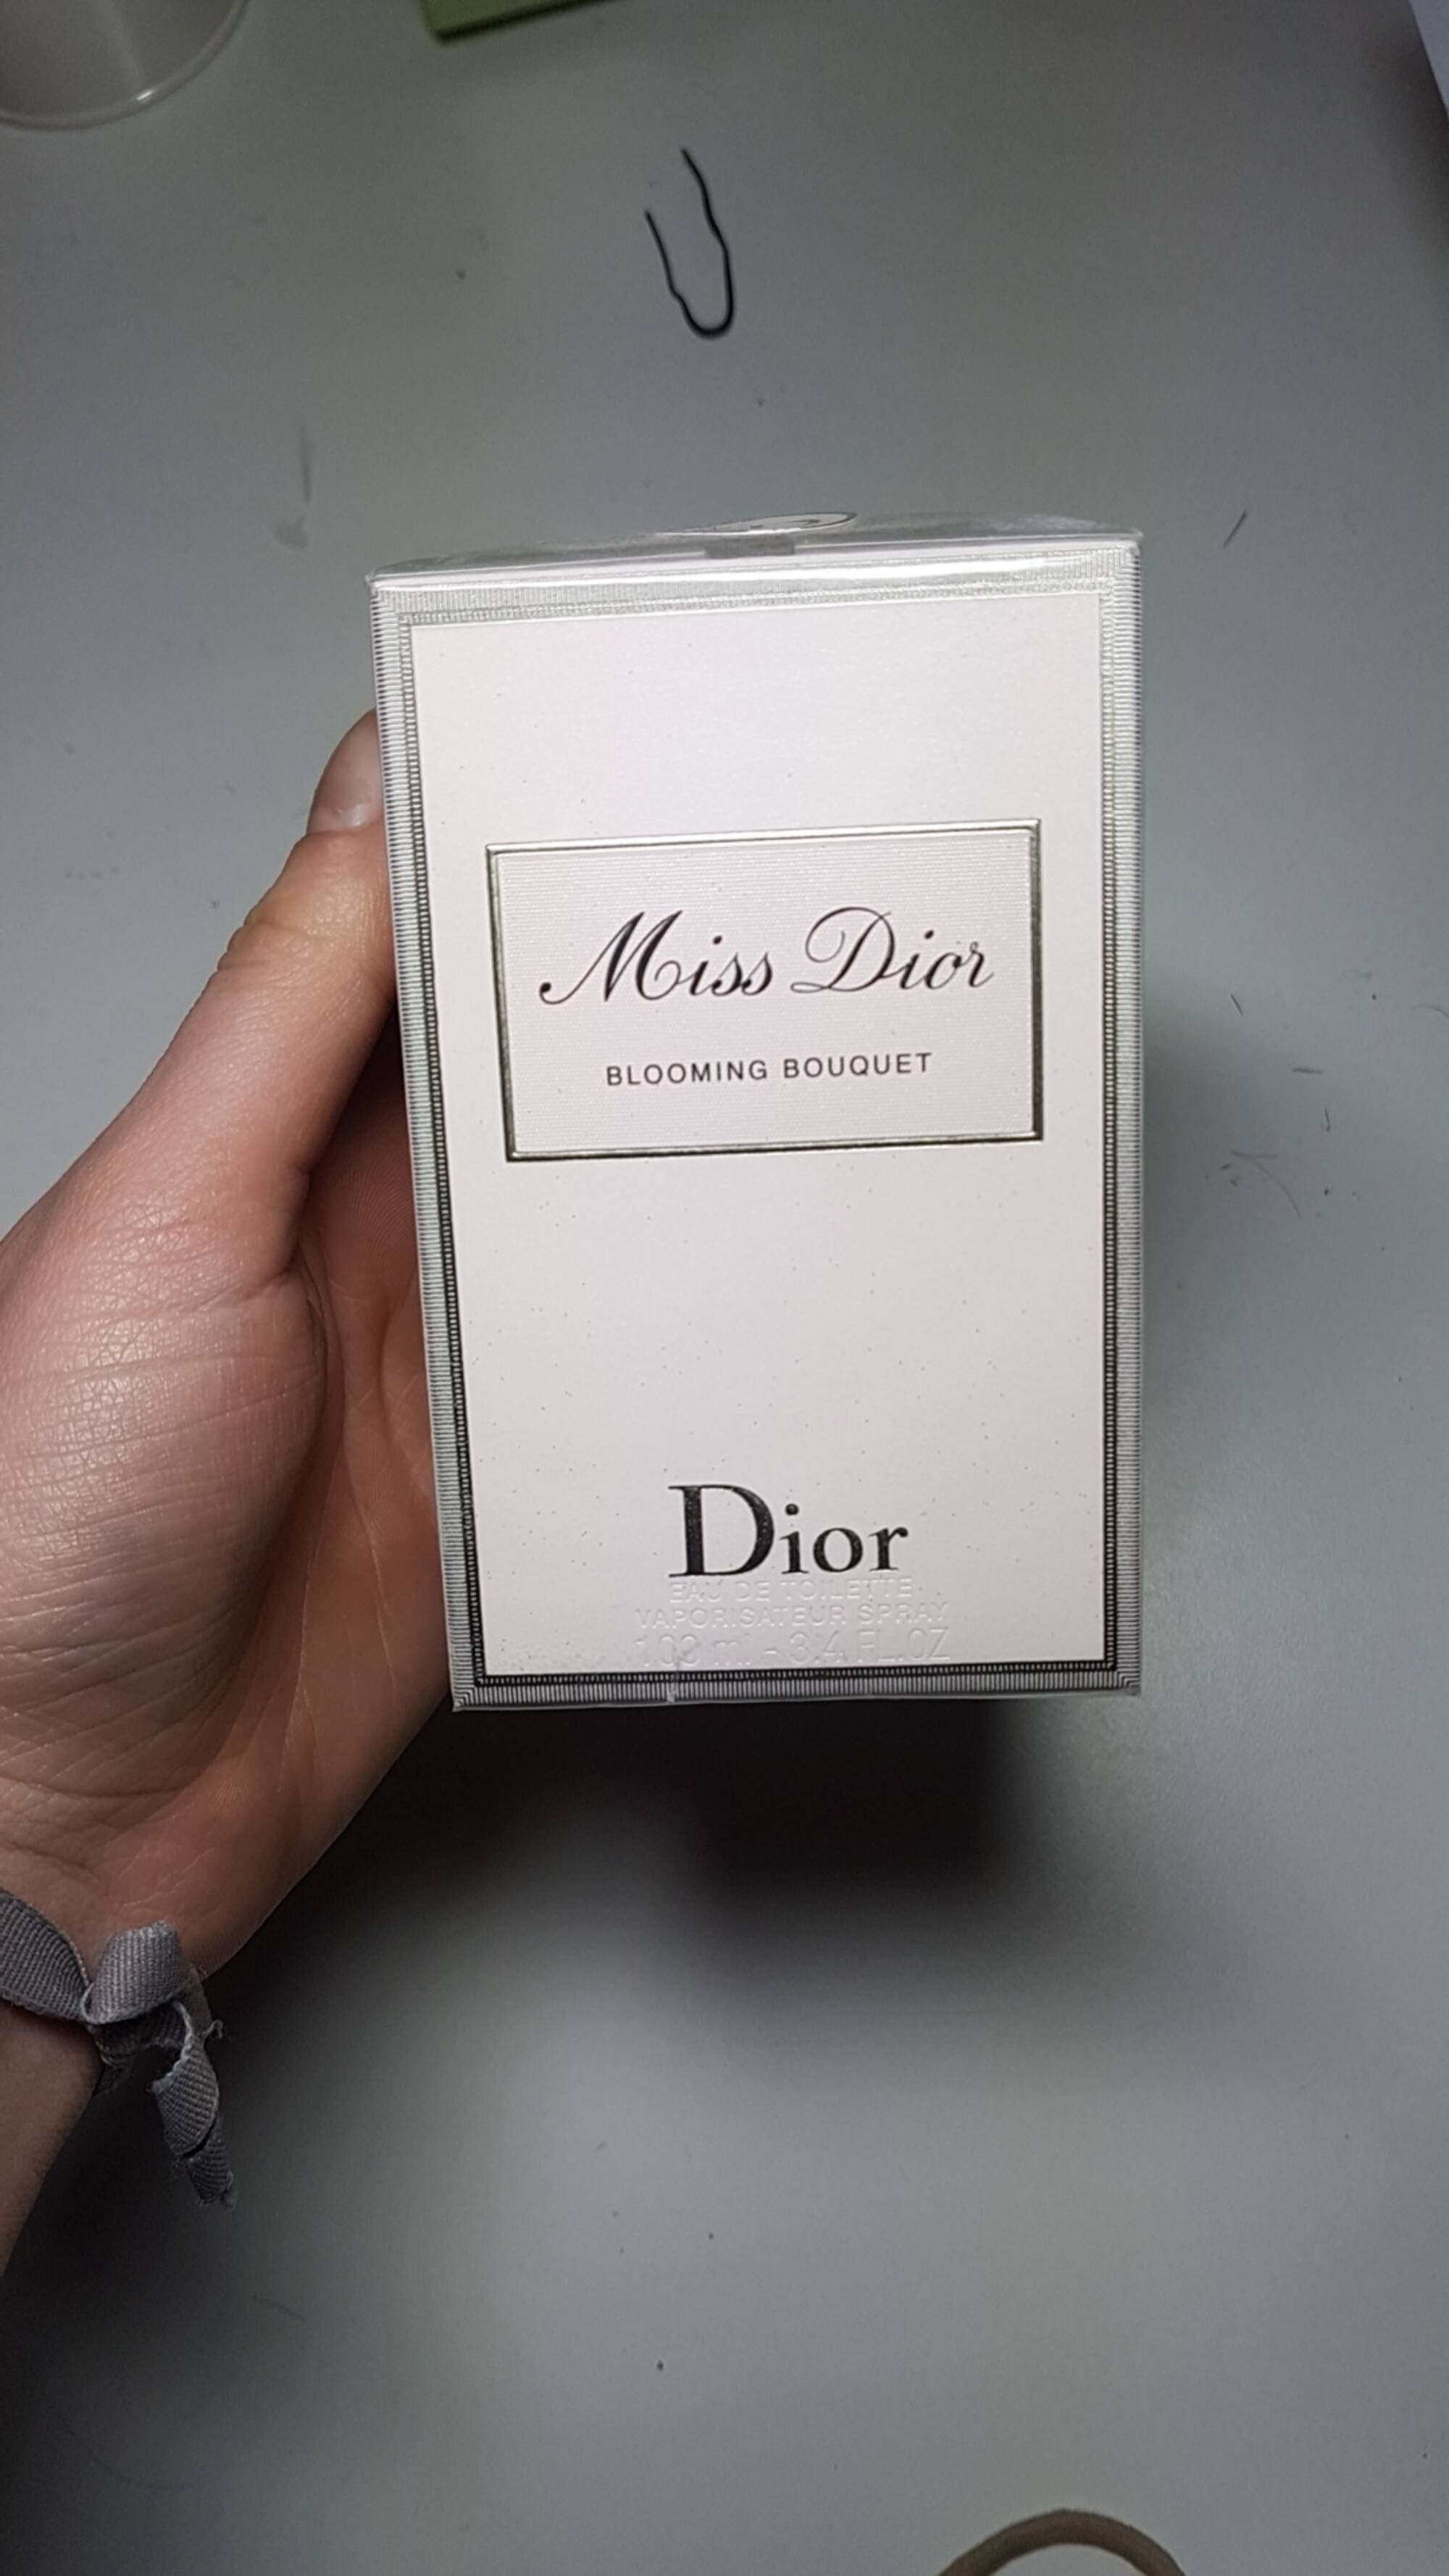 DIOR - Miss dior - Blooming bouquet eau de toilette